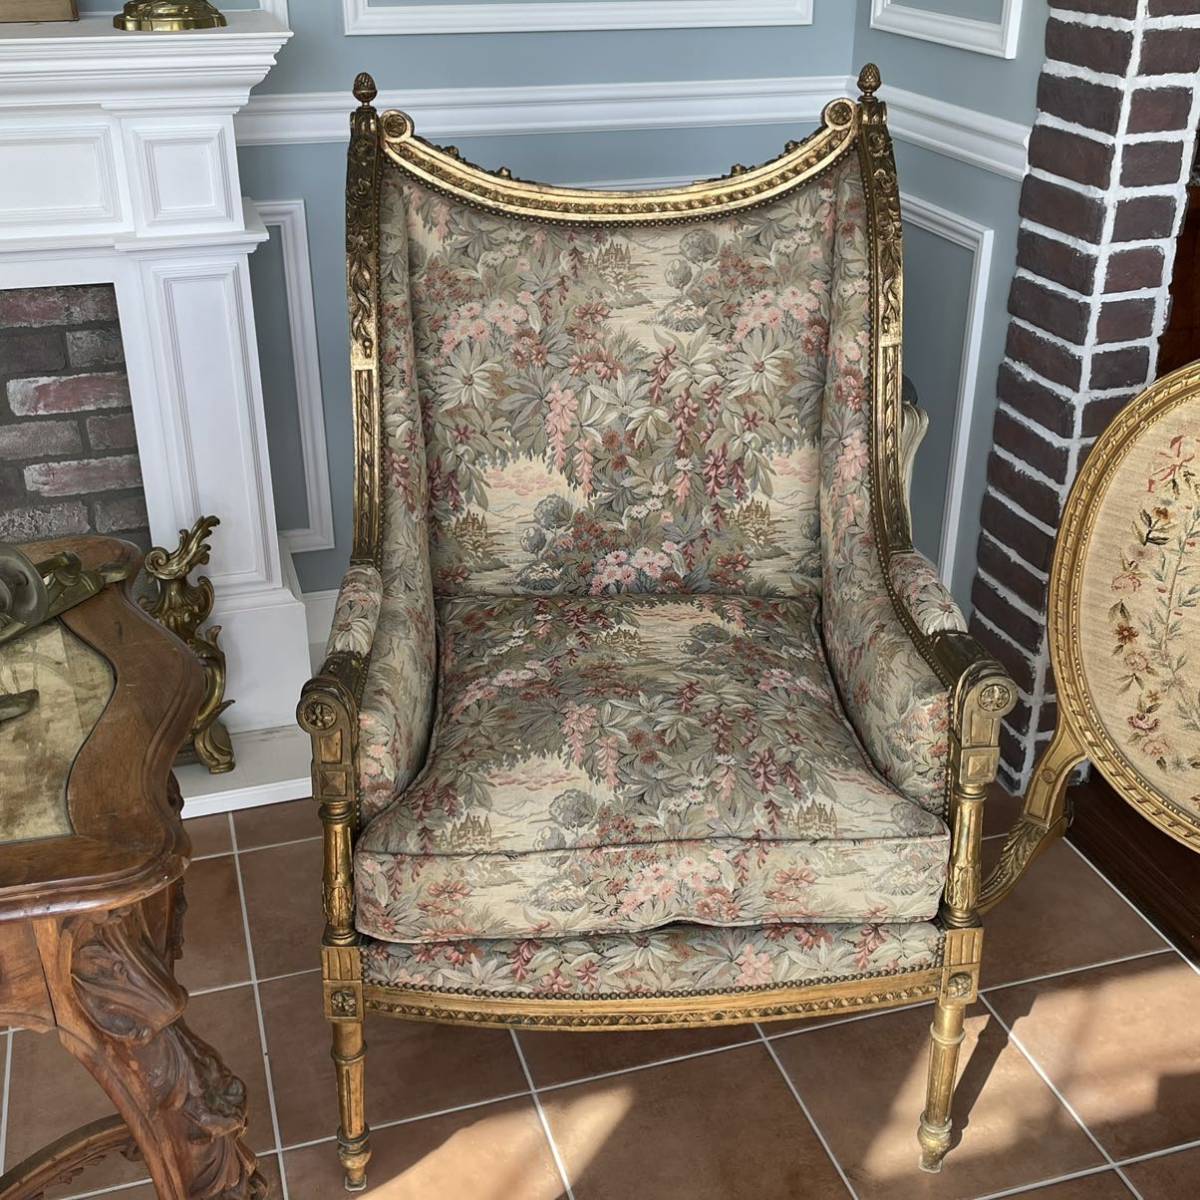  France antique salon sofa Louis 16. form antique furniture antique chair antique sofa chair arm chair 